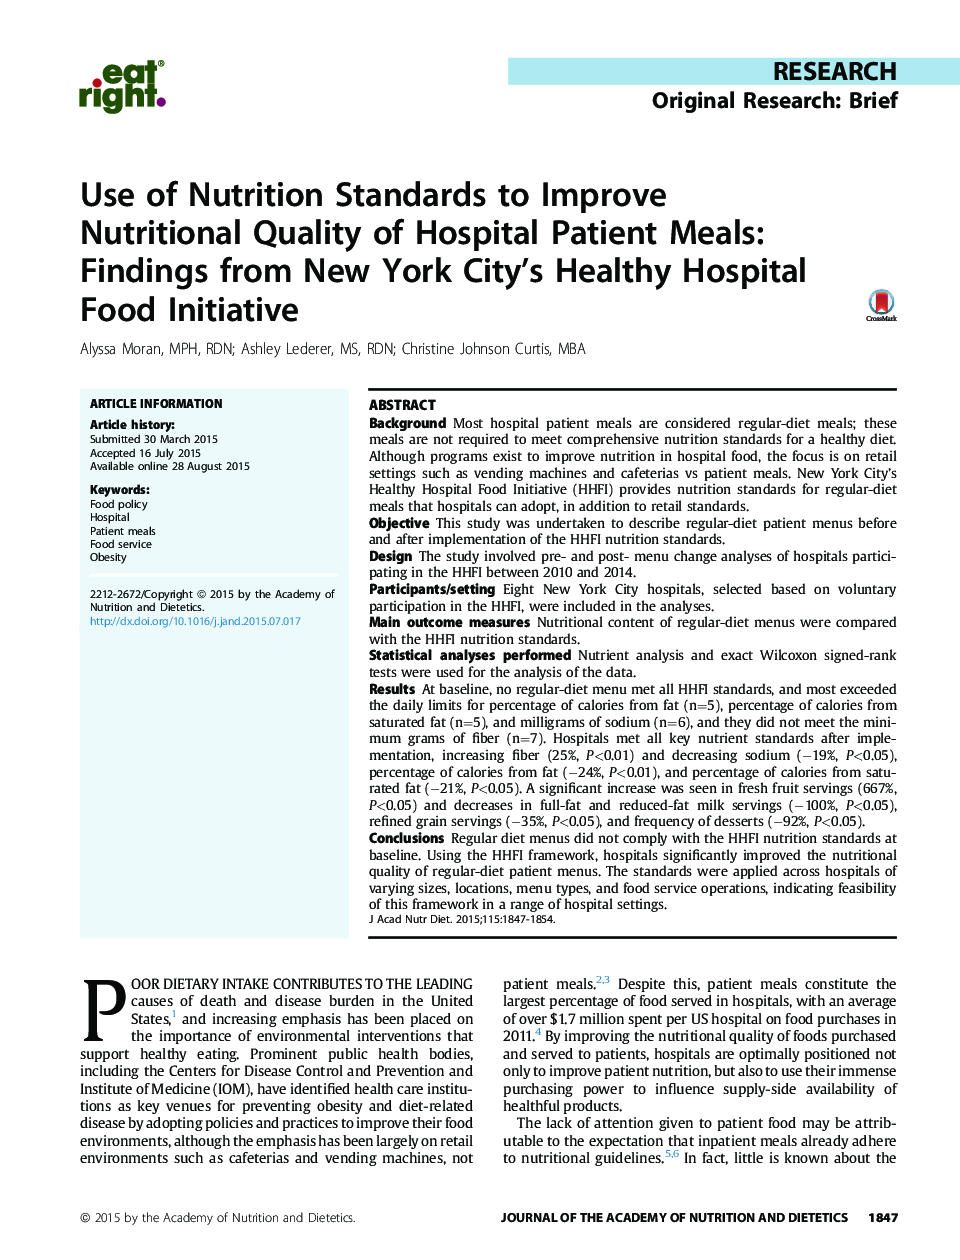 استفاده از استانداردهای تغذیه برای بهبود کیفیت تغذیه ای از غذاهای بیمارستانی بیمار: یافته های طرح غذای بیمارستان سالم نیویورک 